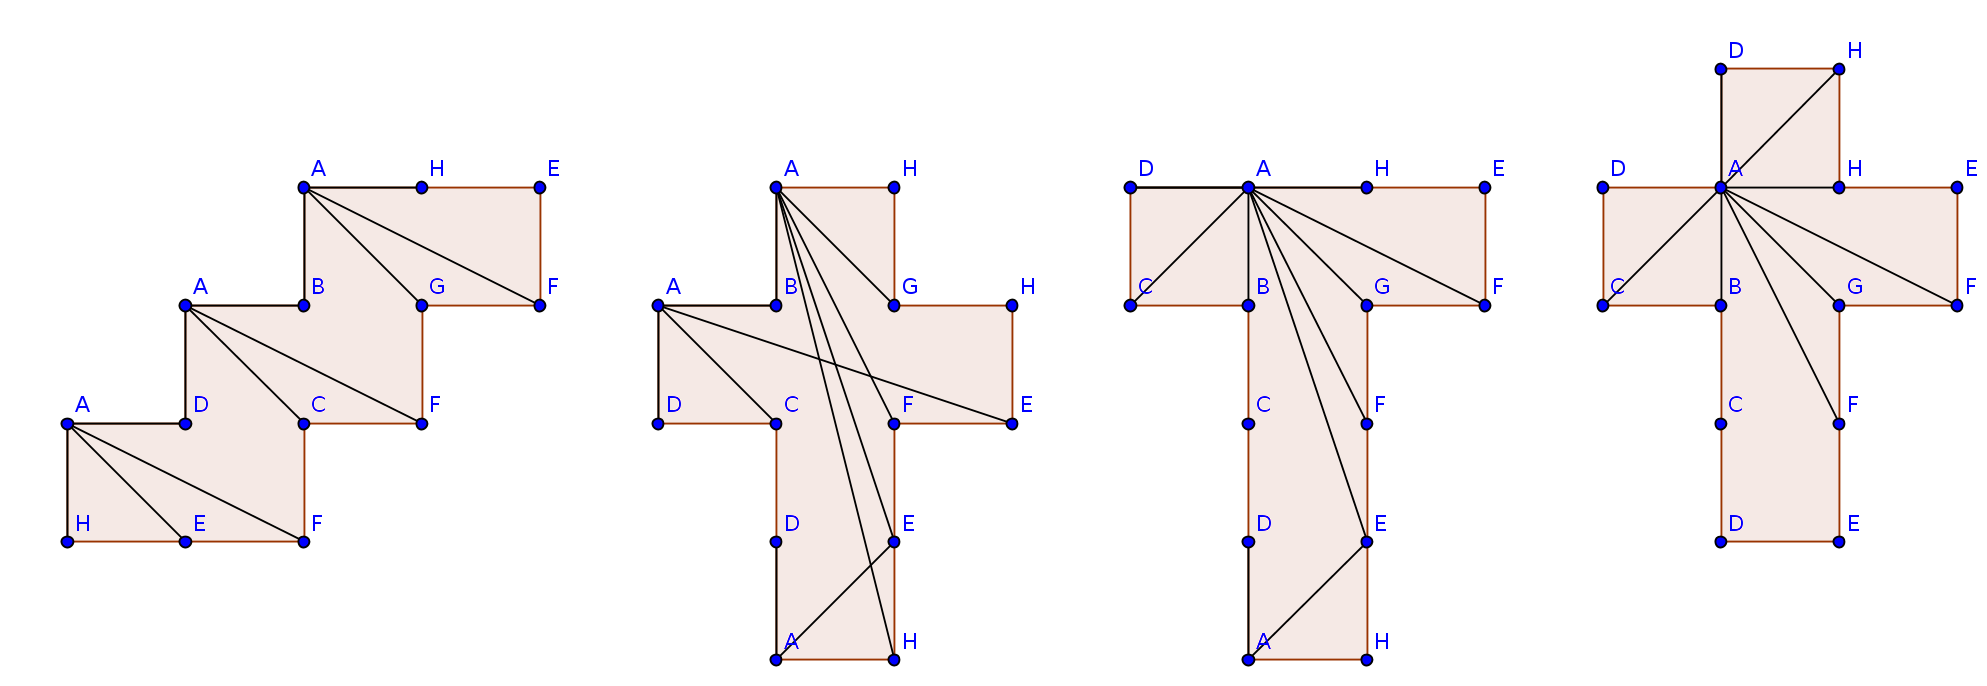 Représentations de chemins géodésiques entre un sommet du cube et les autres sommets.